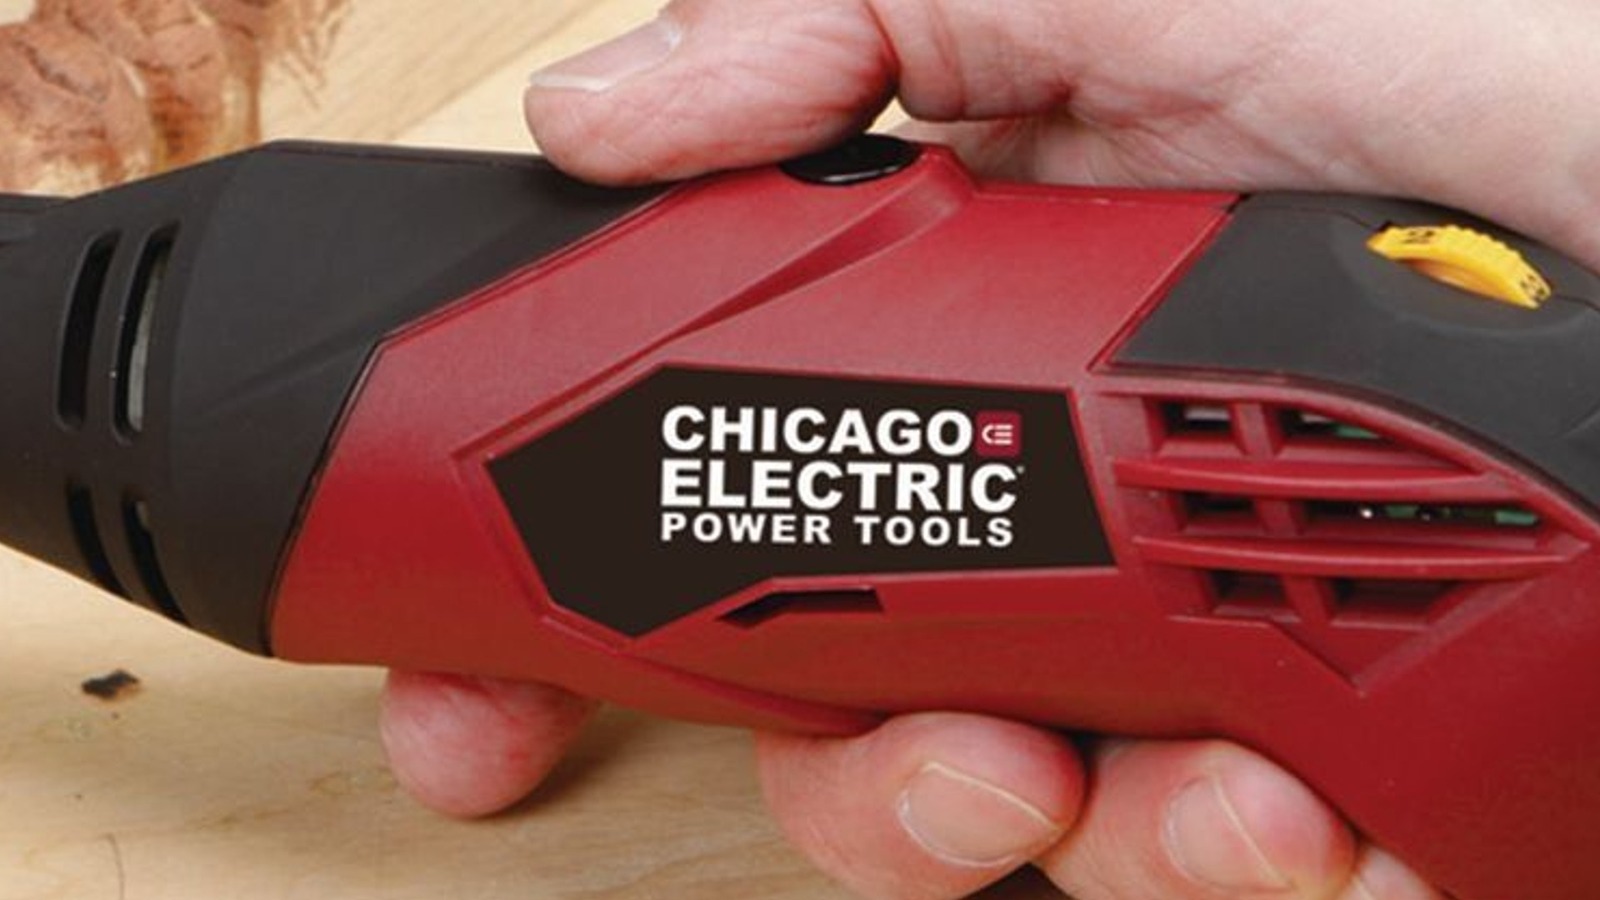 5 herramientas eléctricas imprescindibles de Chicago para entusiastas del bricolaje